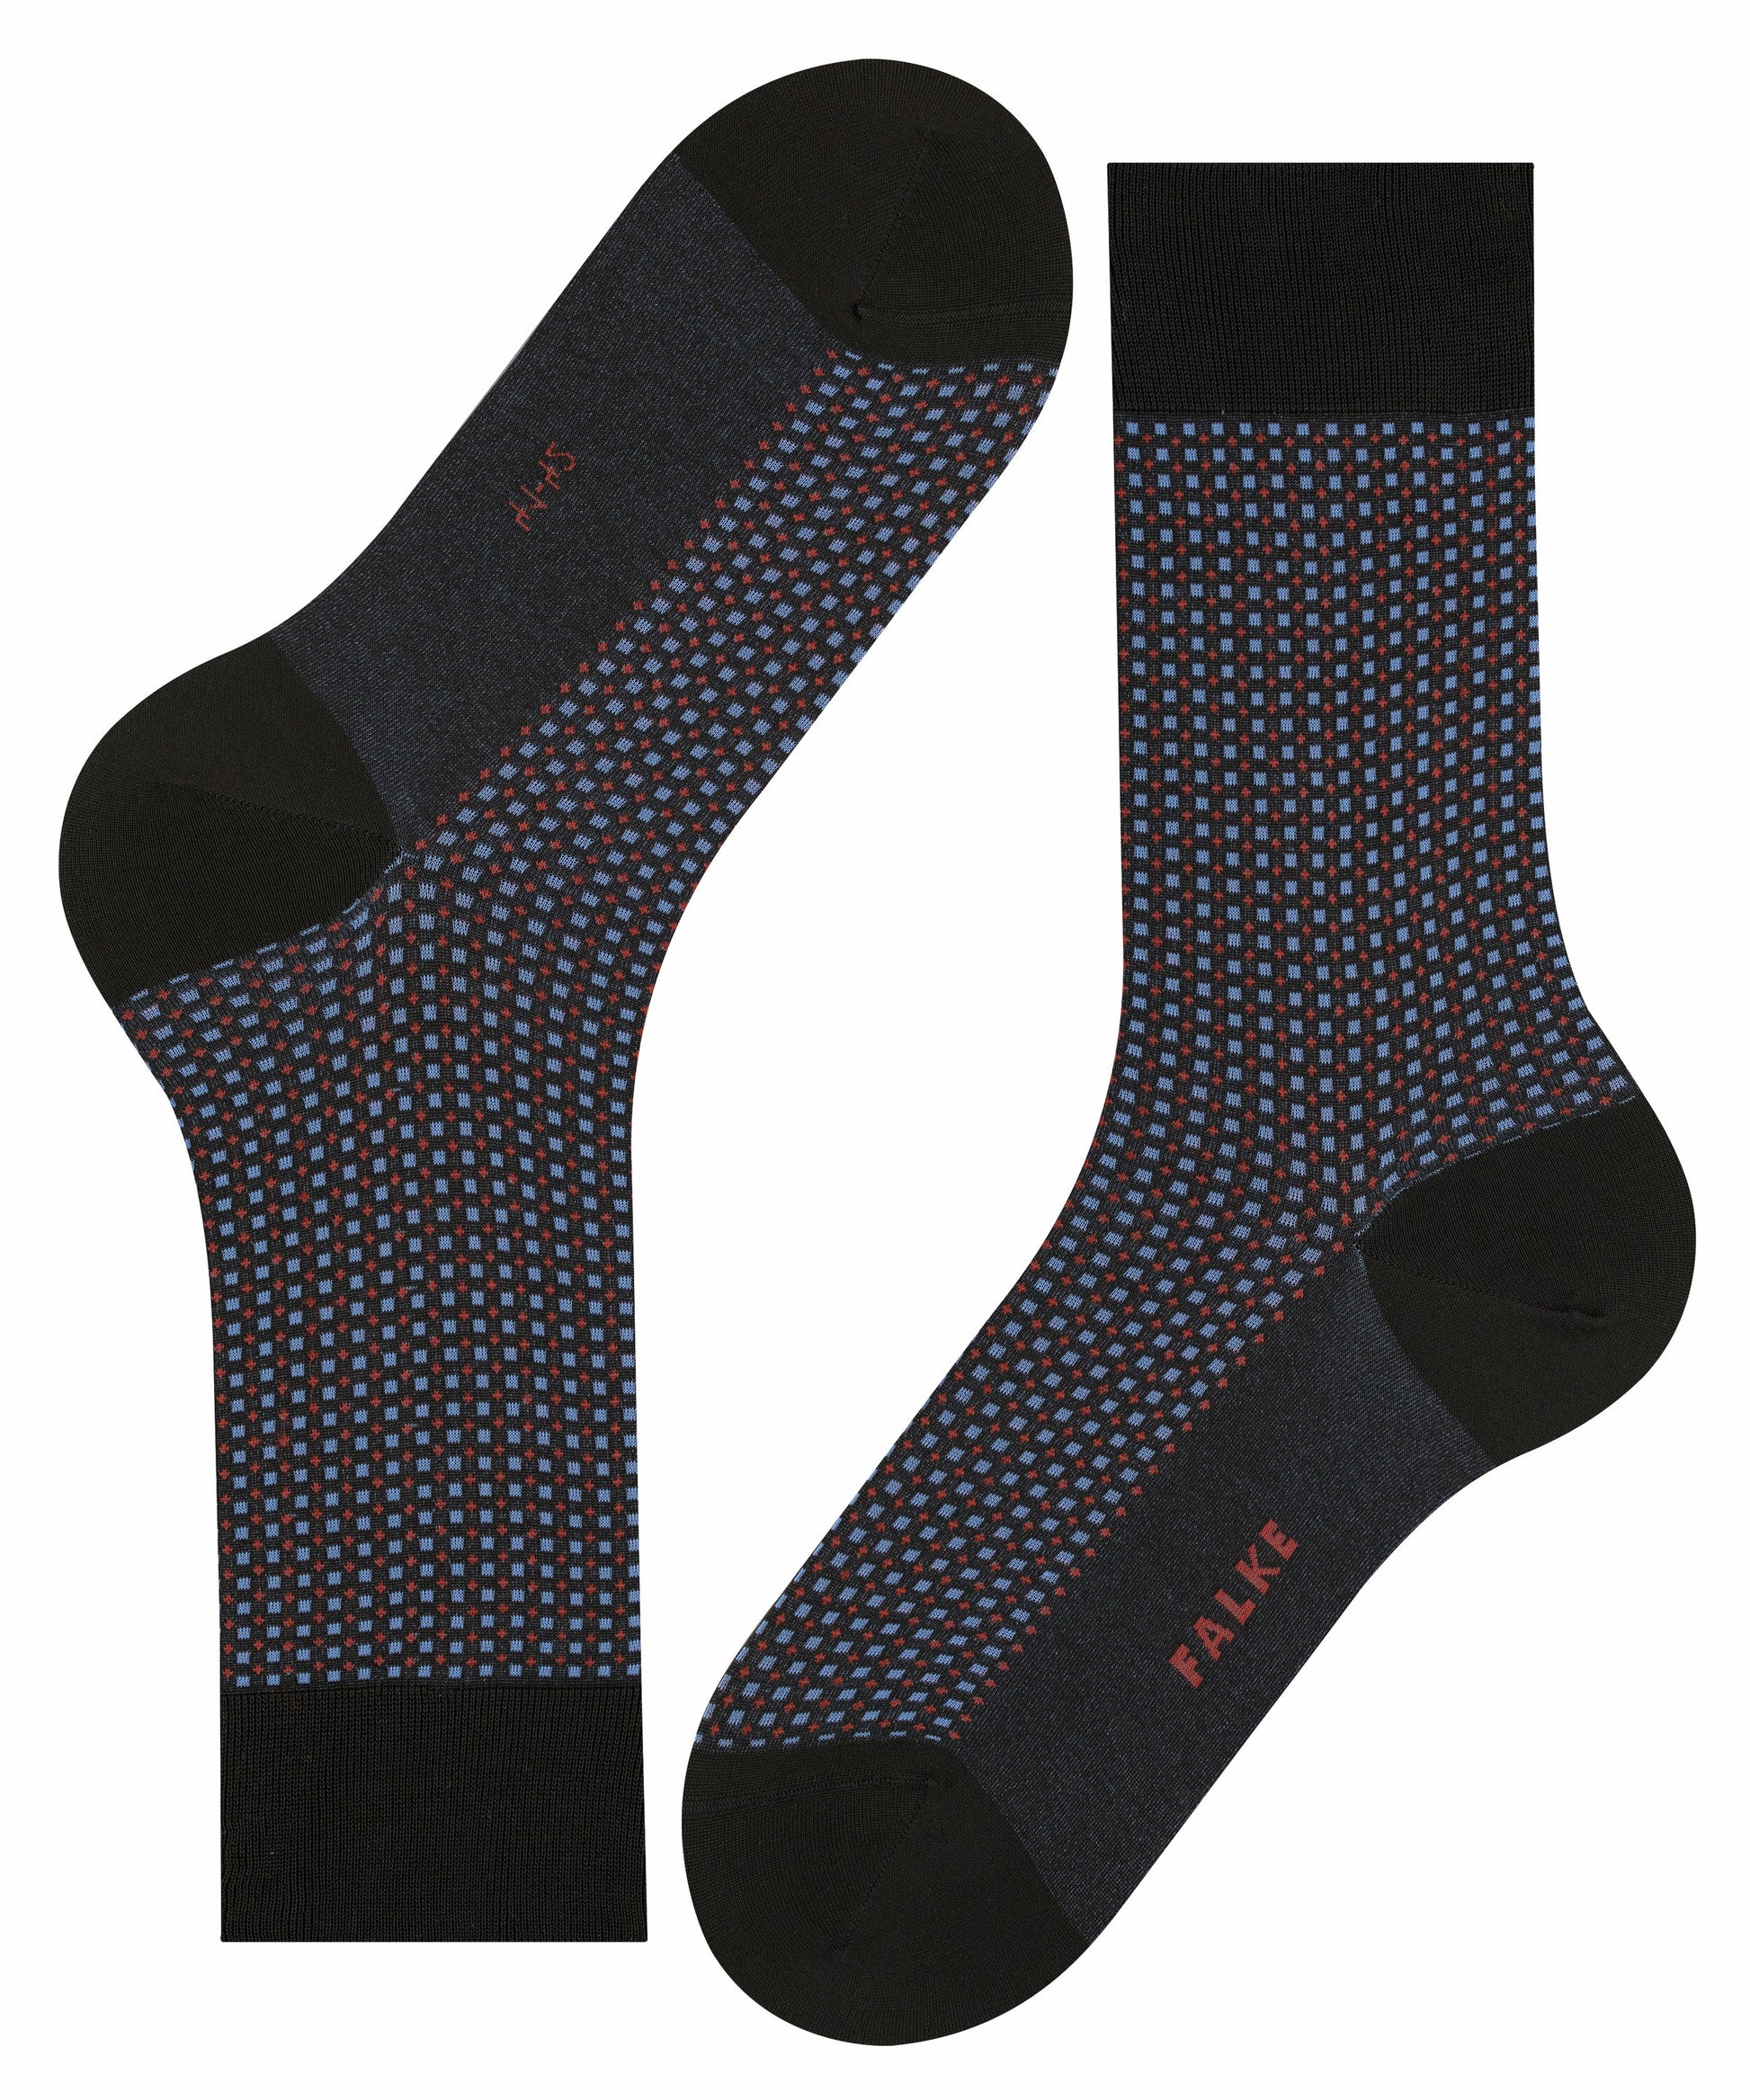 Socken Uptown Tie (Black)